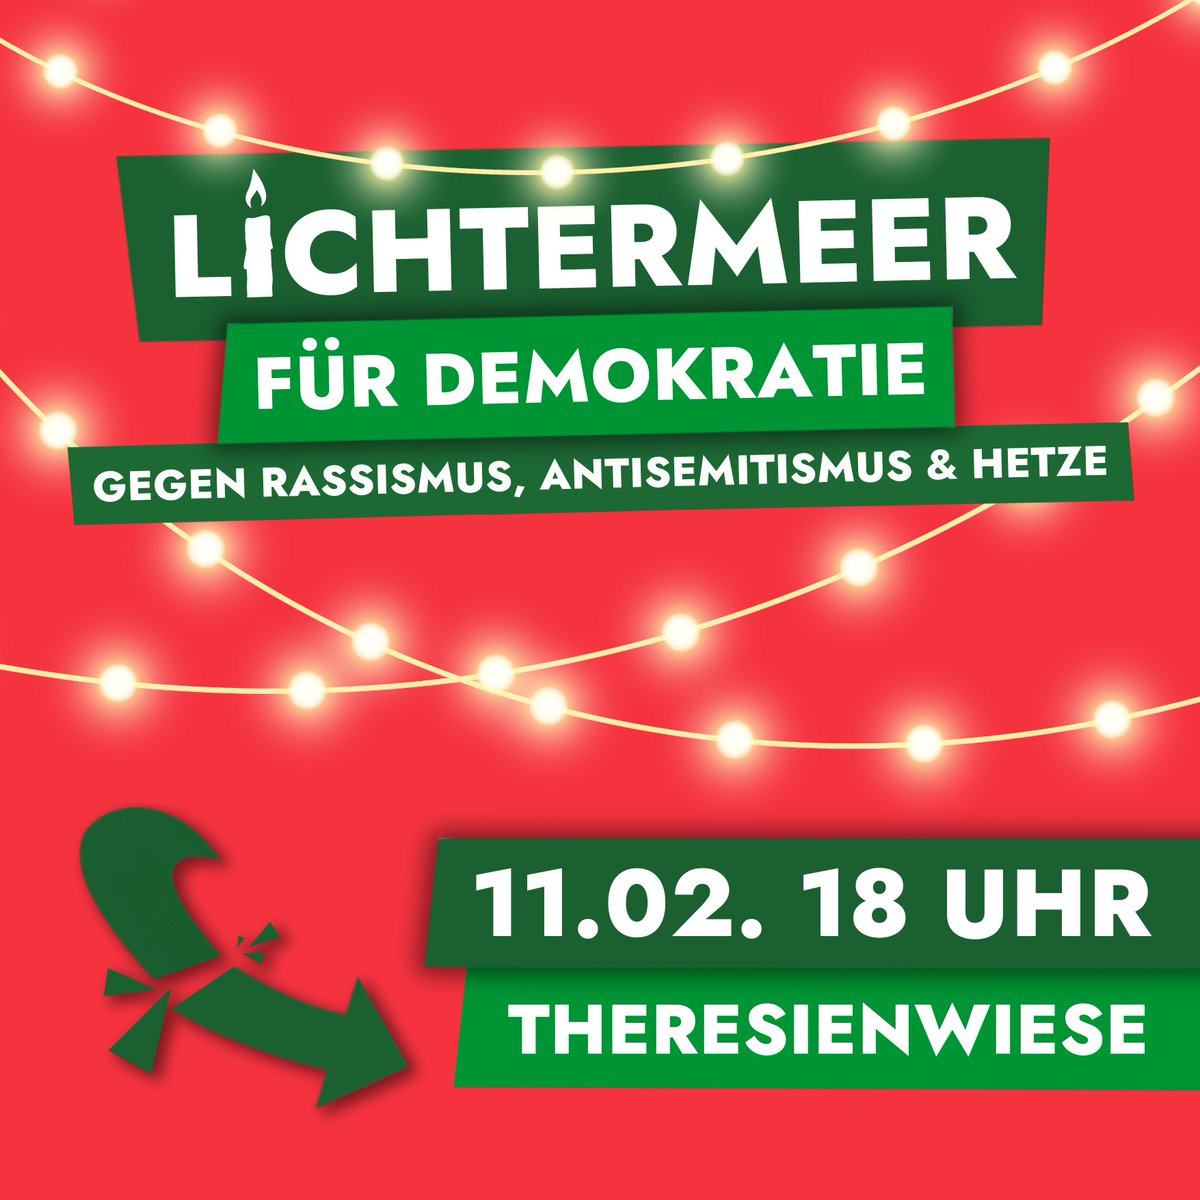 Auch wir rufen auf, am Sonntag für eine demokratische Gesellschaft und gegen Rechtsruck, Rassismus, Antisemitismus auf die Theresienwiese München zu kommen. #muc1102